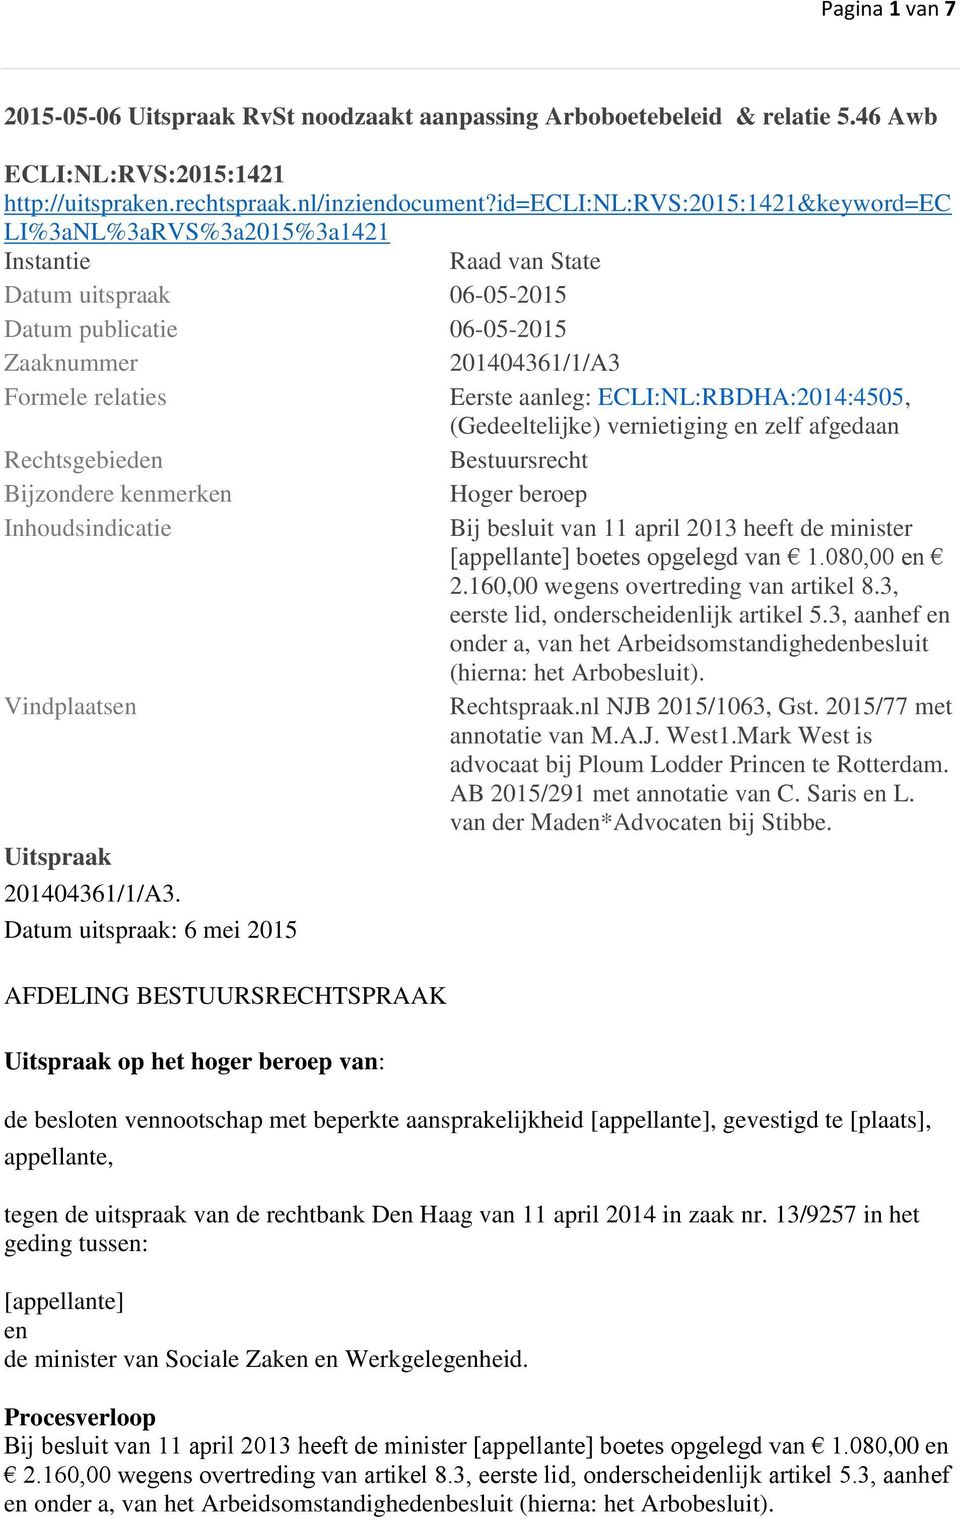 aanleg: ECLI:NL:RBDHA:2014:4505, (Gedeeltelijke) vernietiging en zelf afgedaan Rechtsgebieden Bestuursrecht Bijzondere kenmerken Hoger beroep Inhoudsindicatie Bij besluit van 11 april 2013 heeft de